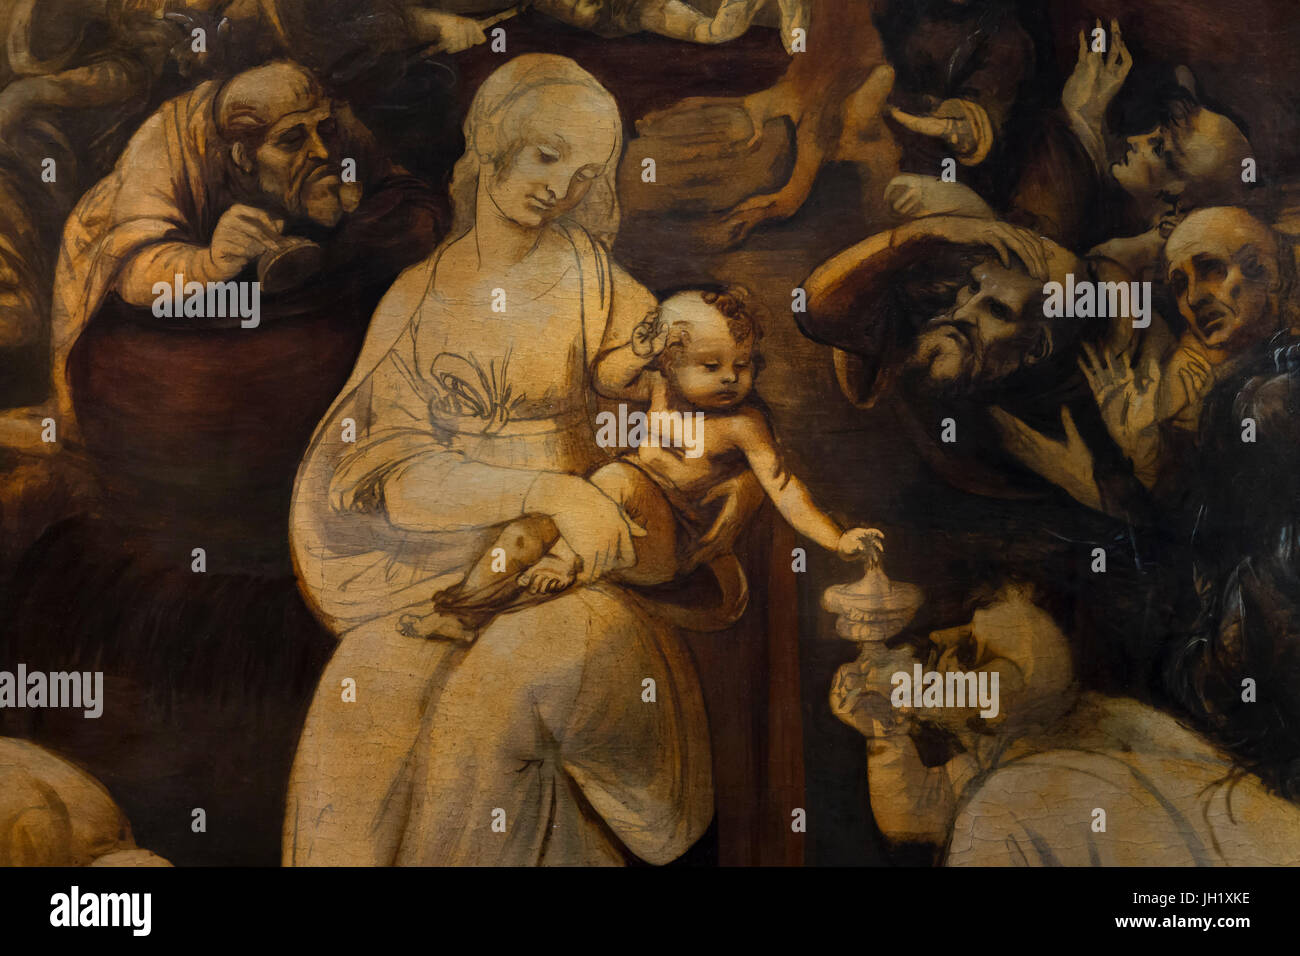 Détail de l'Adoration des mages de Léonard de Vinci, vers 1482, Galerie des Offices, Florence, Toscane, Italie, Europe Banque D'Images